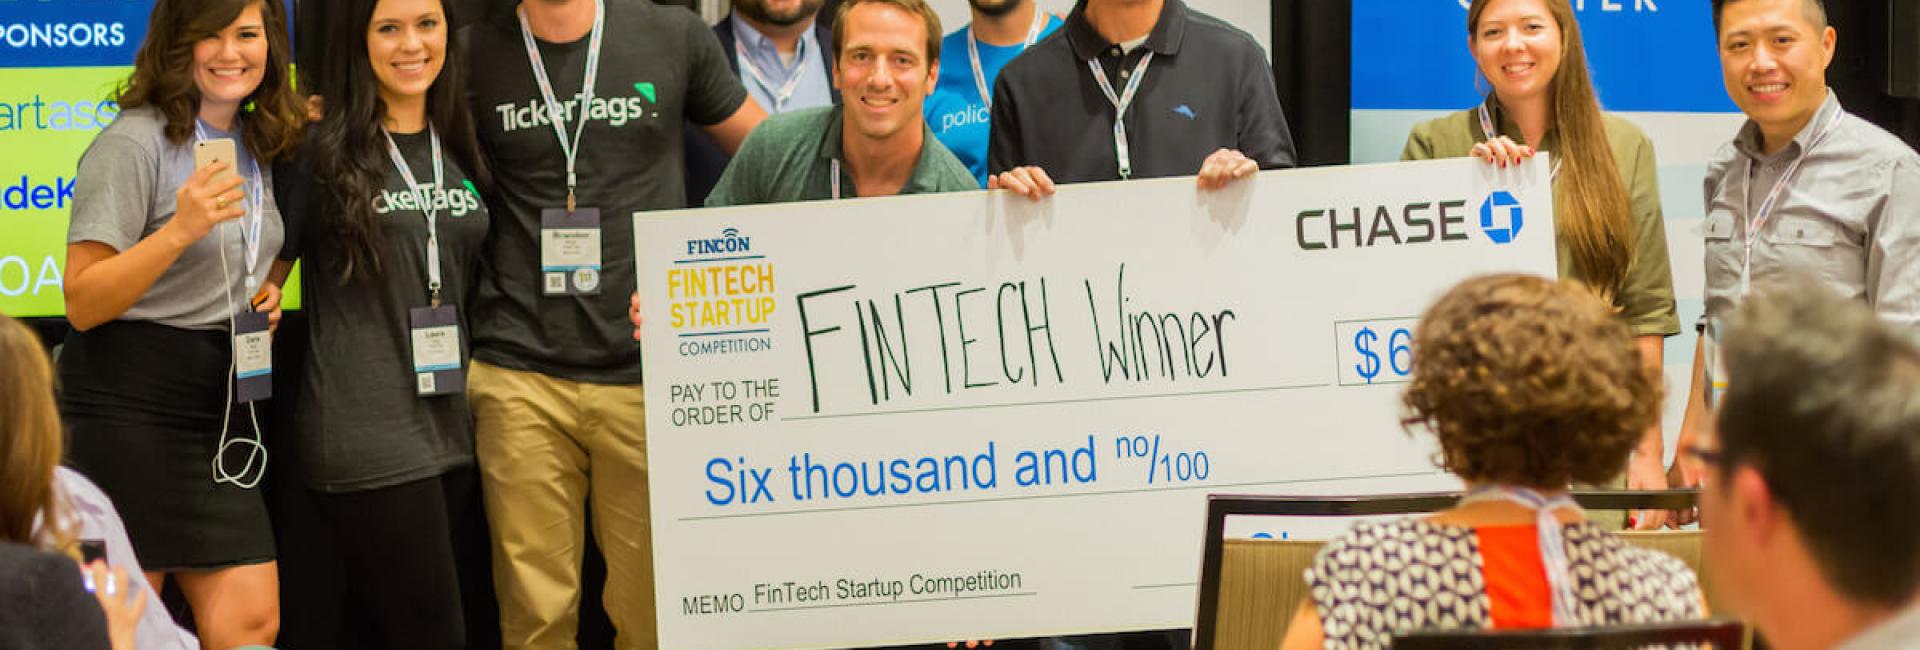 Fintech Startup - Financial Media